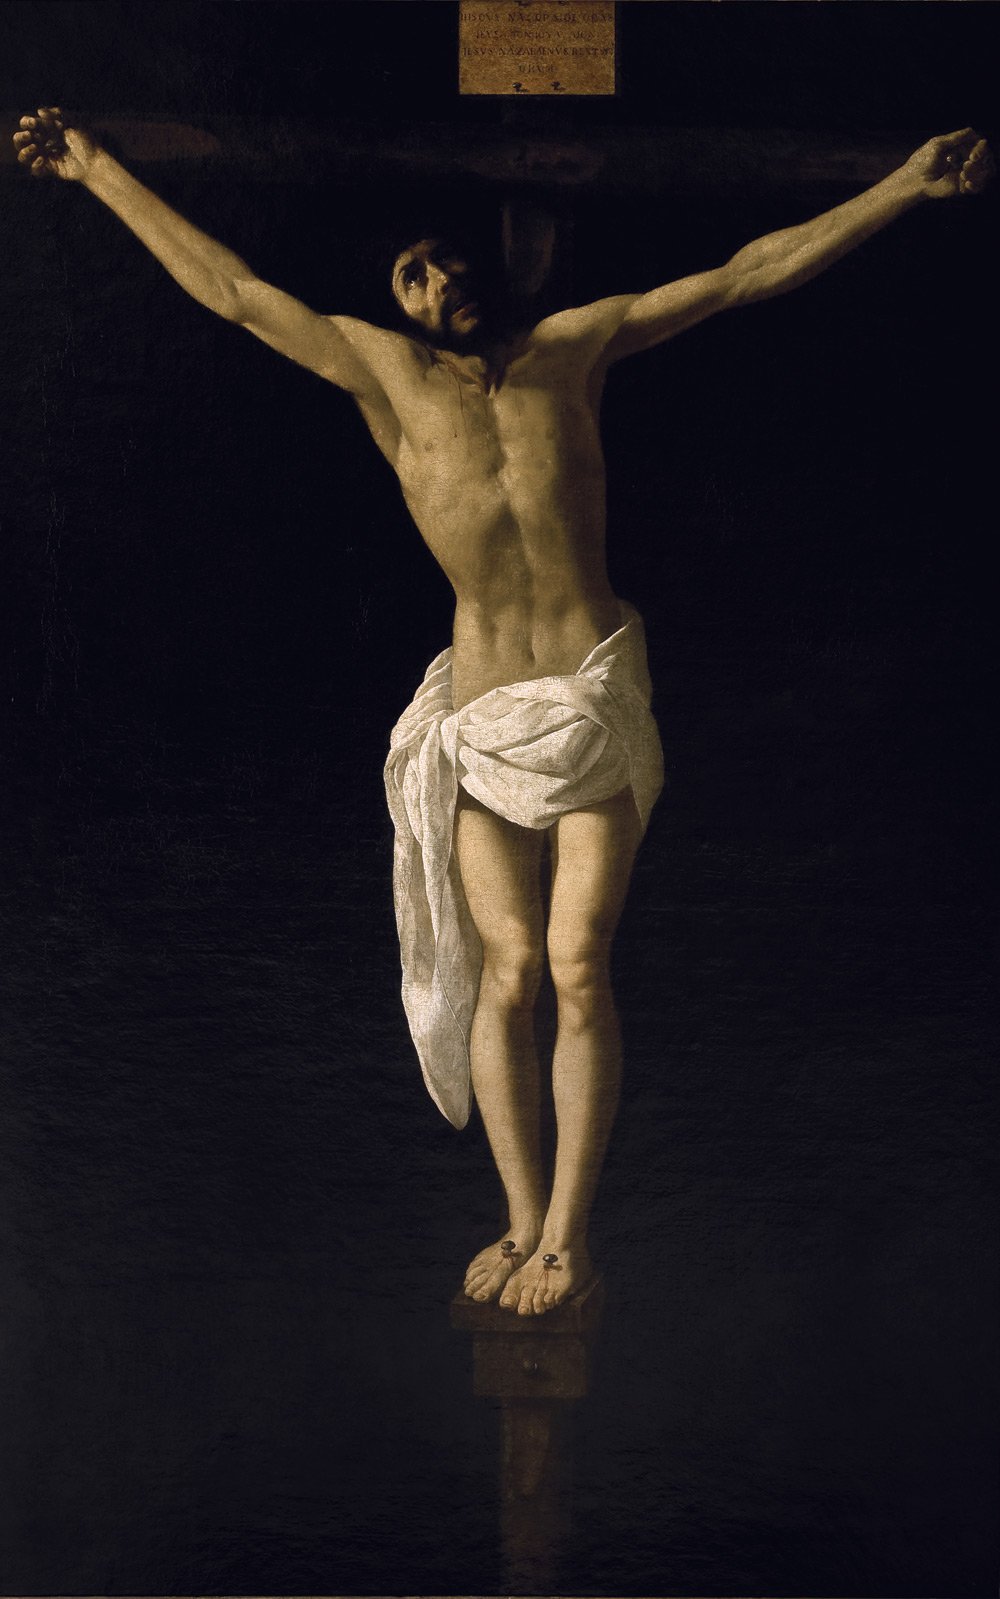 Crucifixión by Francisco de Zurbarán - circa 1630 - 168.9 x 109.8 cm Museo de Arte de Ponce